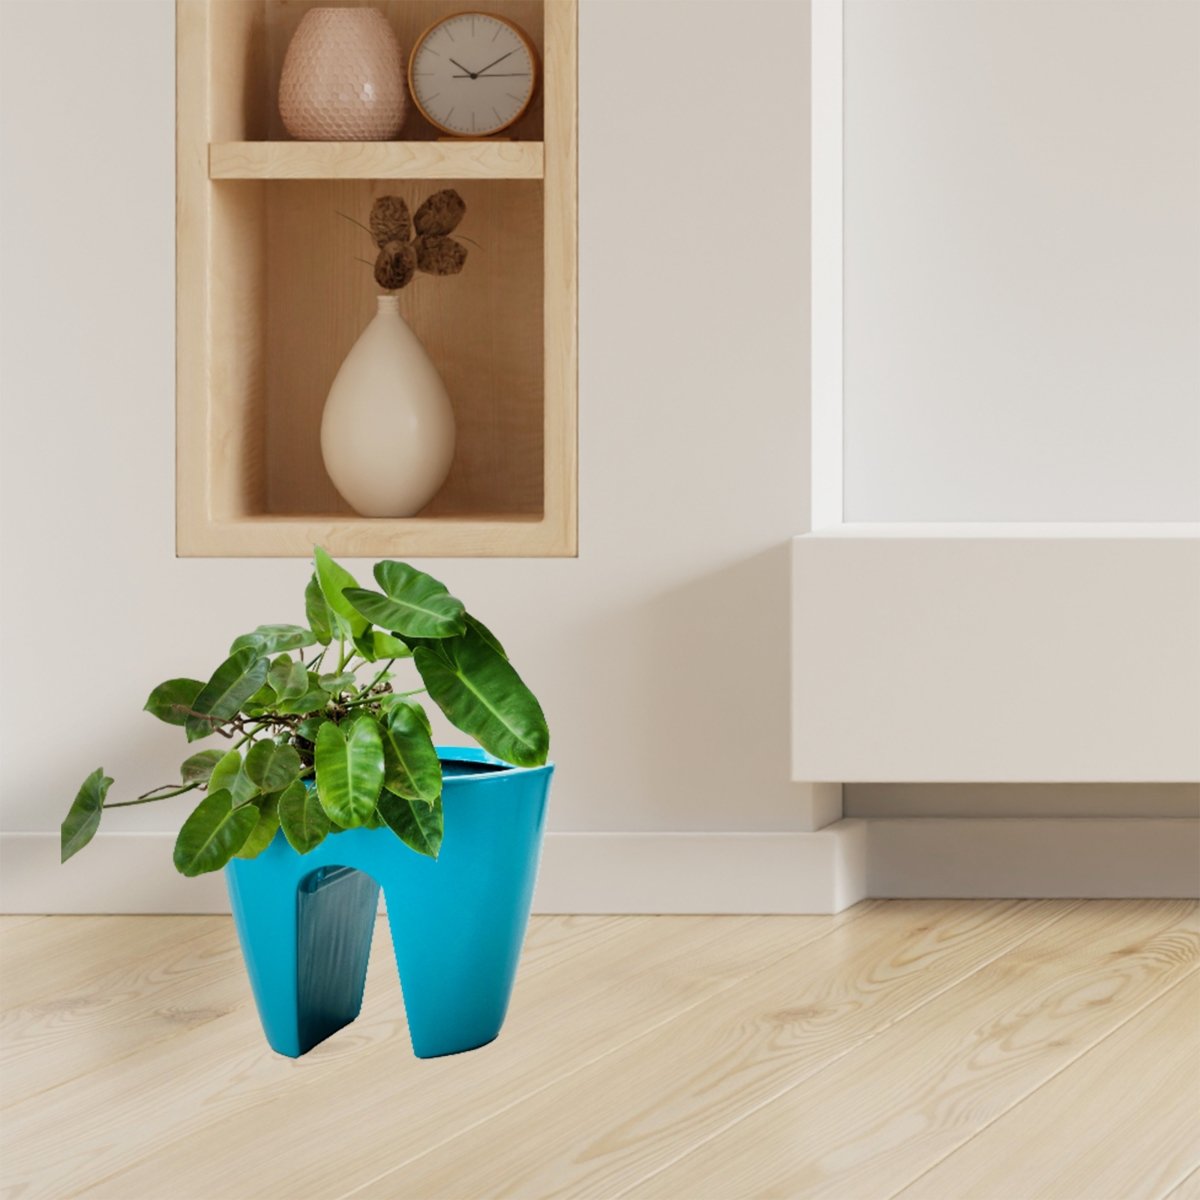 Kezevel Indoor Outdoor FRP Planters - Conical Railing Planter, Matte Faux Flower Pot Lightweight Durable for Home Décor